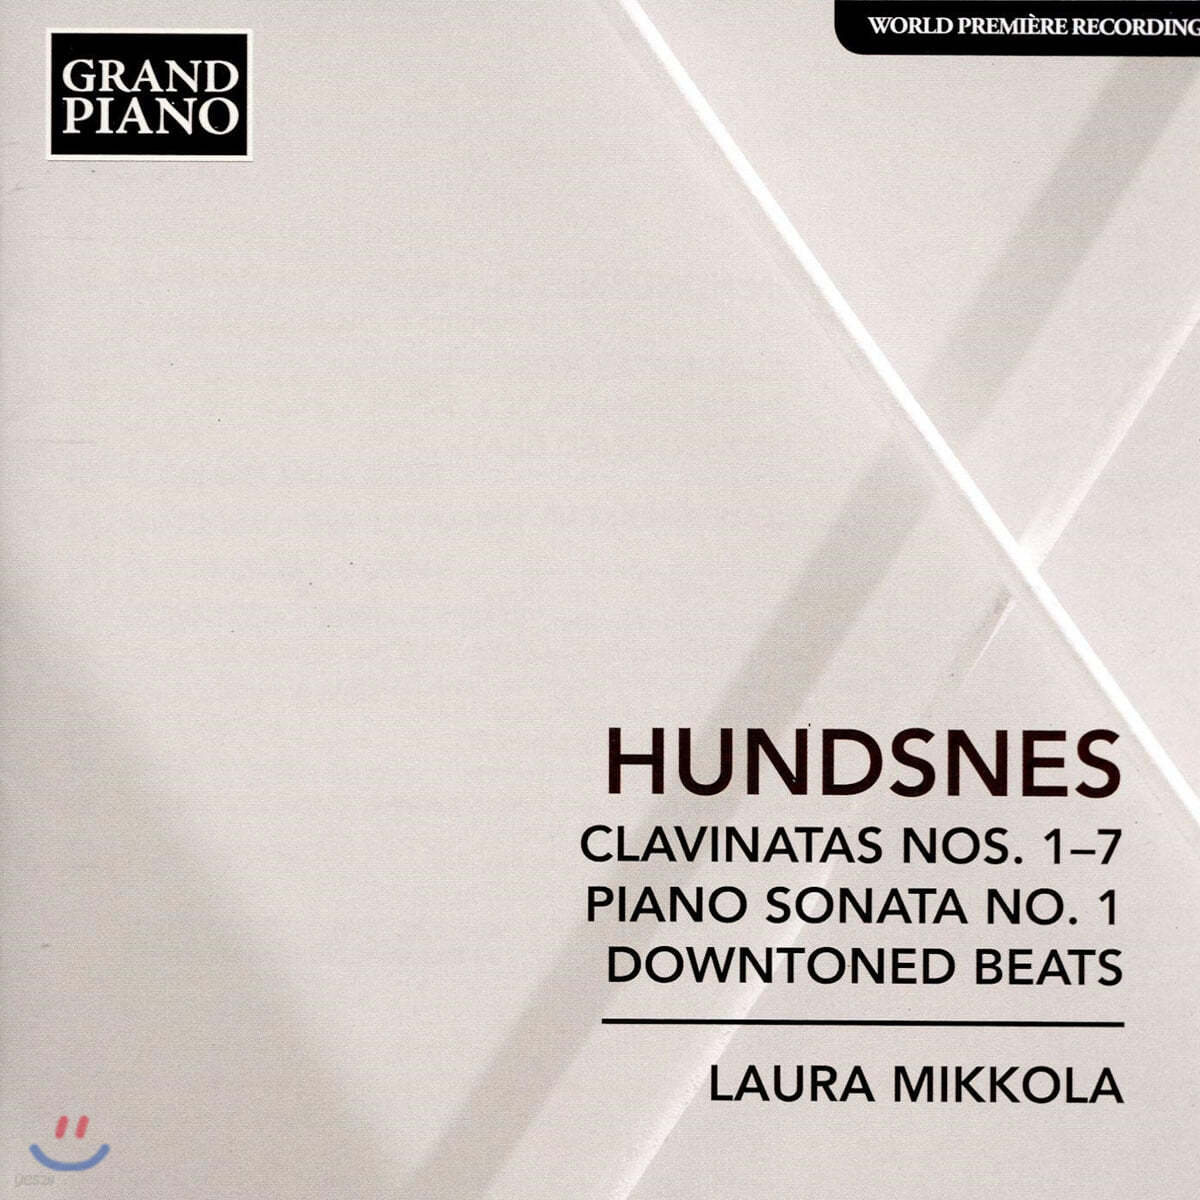 Laura Mikkola 스베인 훈스네스: 카바티나 1~7번, 피아노 소나타 1번, 다운톤 비트 (Svein Hundsnes: Clavinatas Nos. 1-7)